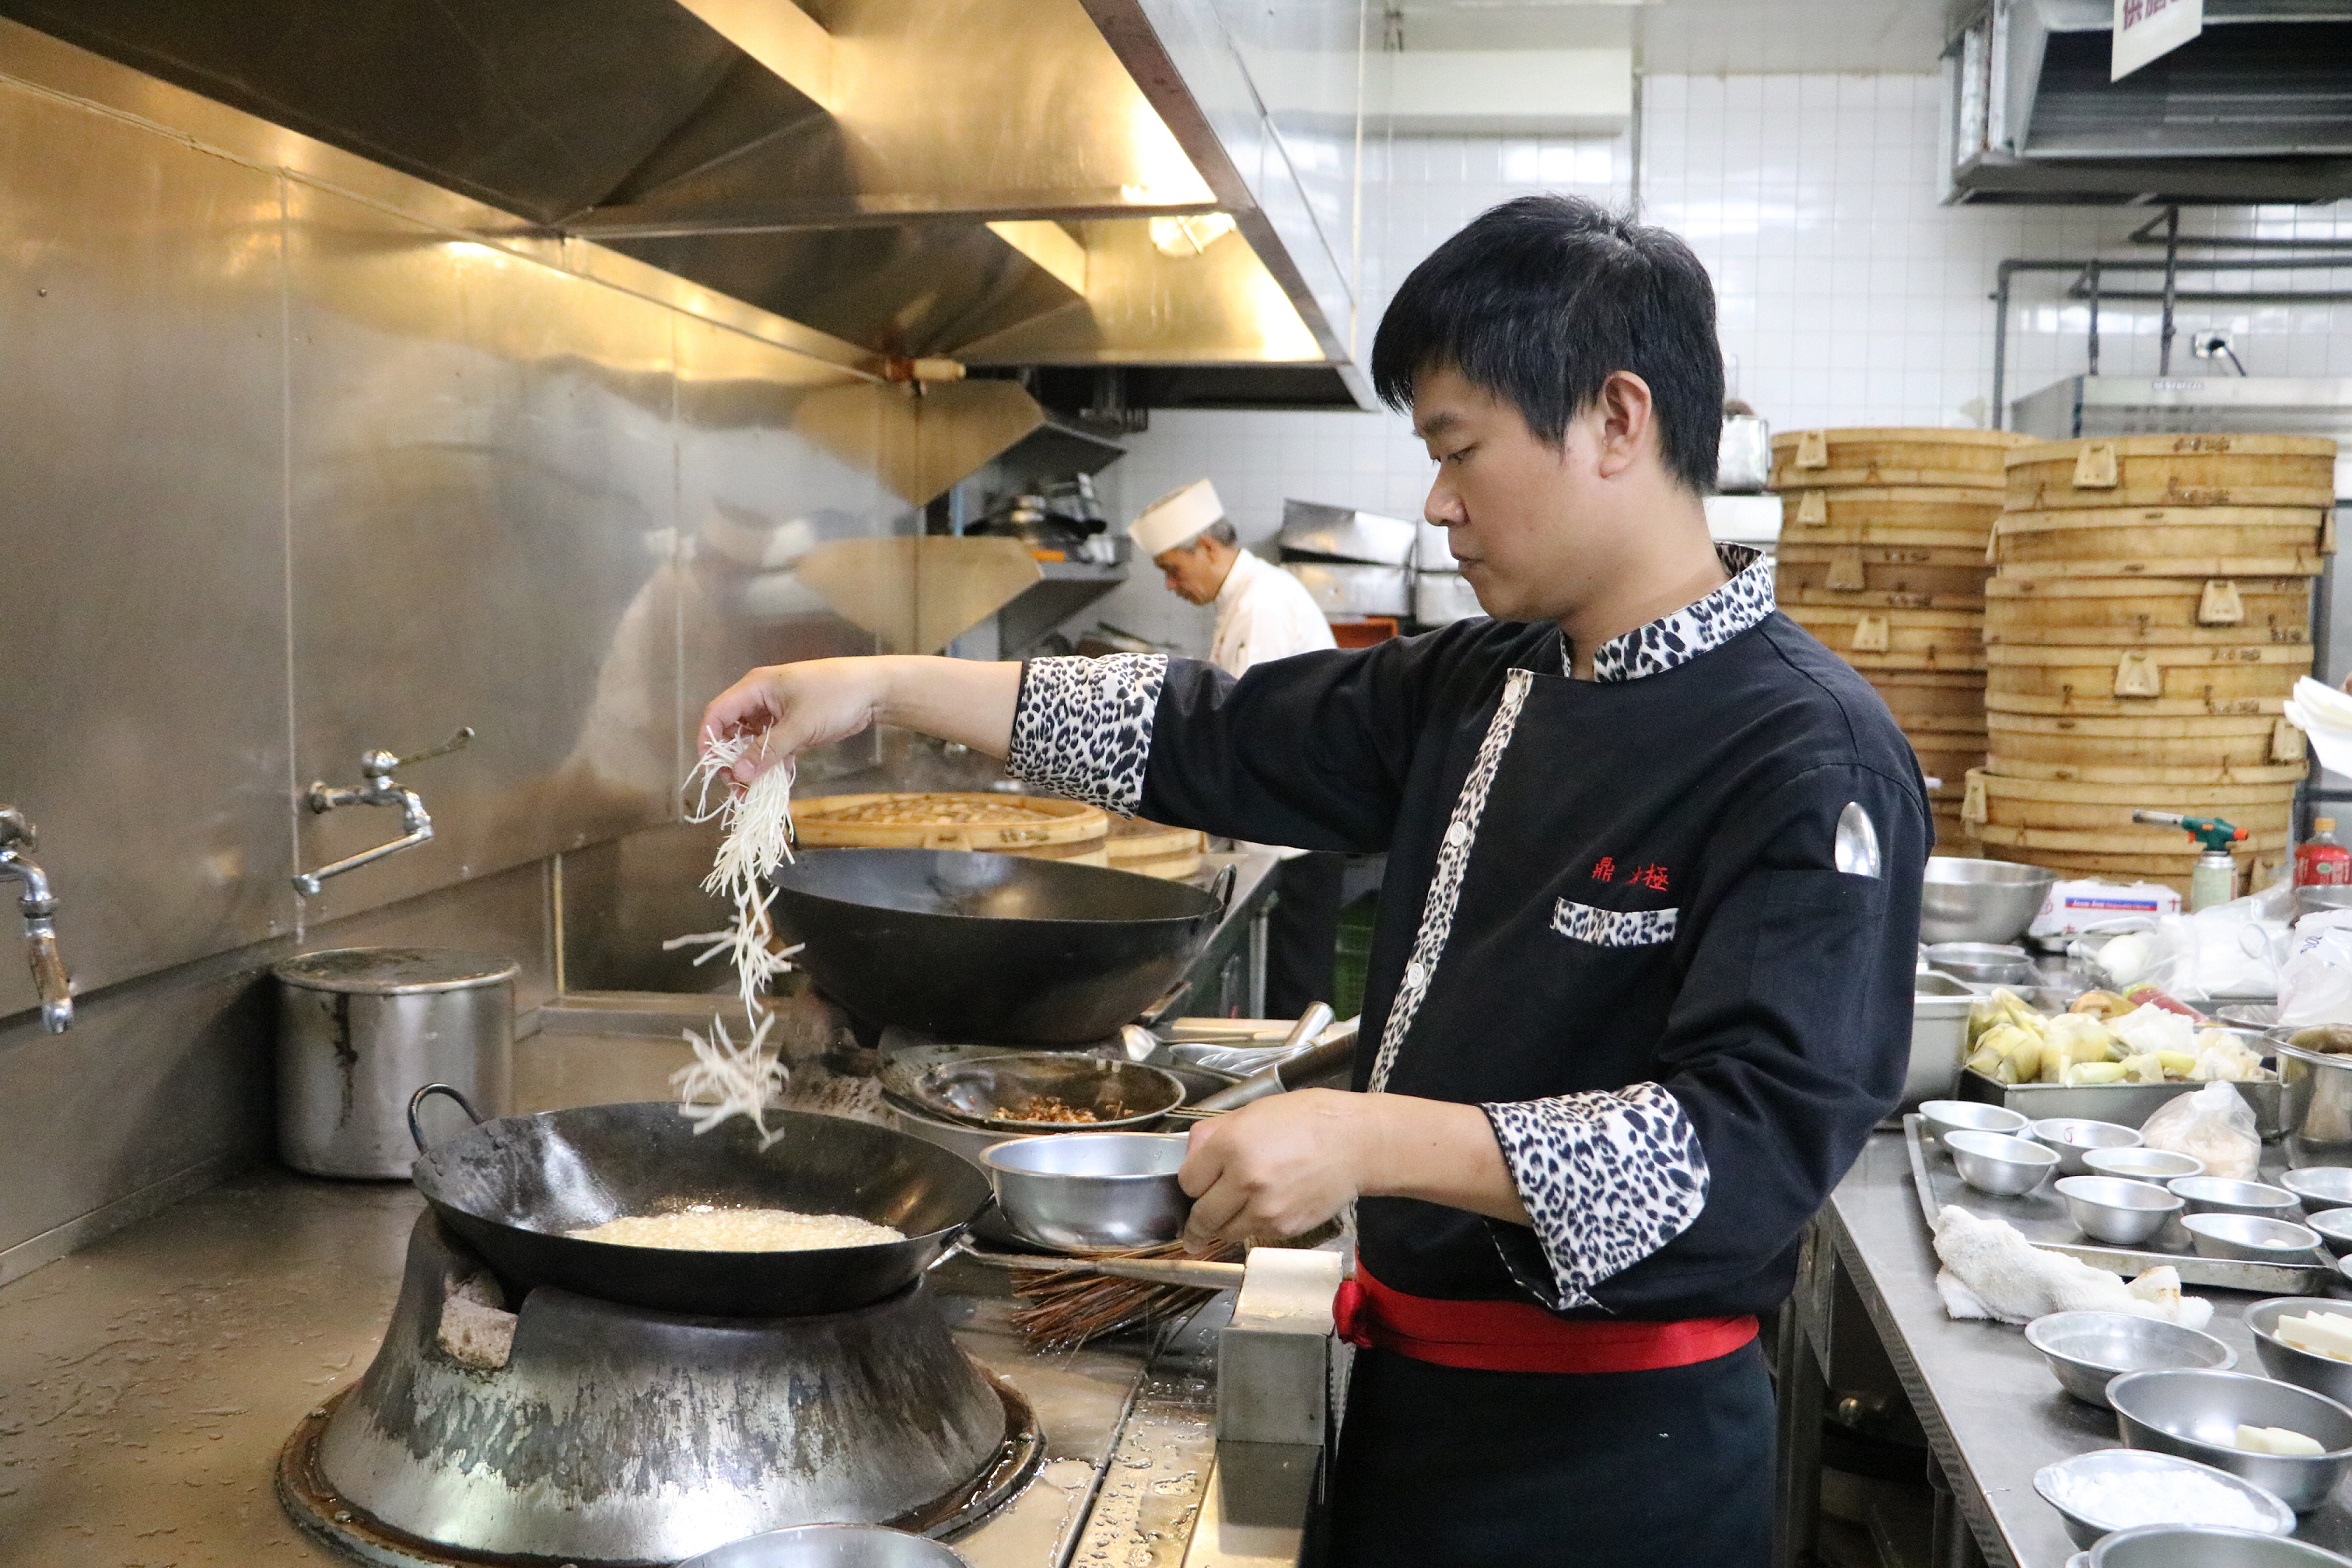 【新聞圖片1】客家名廚溫國智今日上午就在廚房忙碌準備各項創新料理。